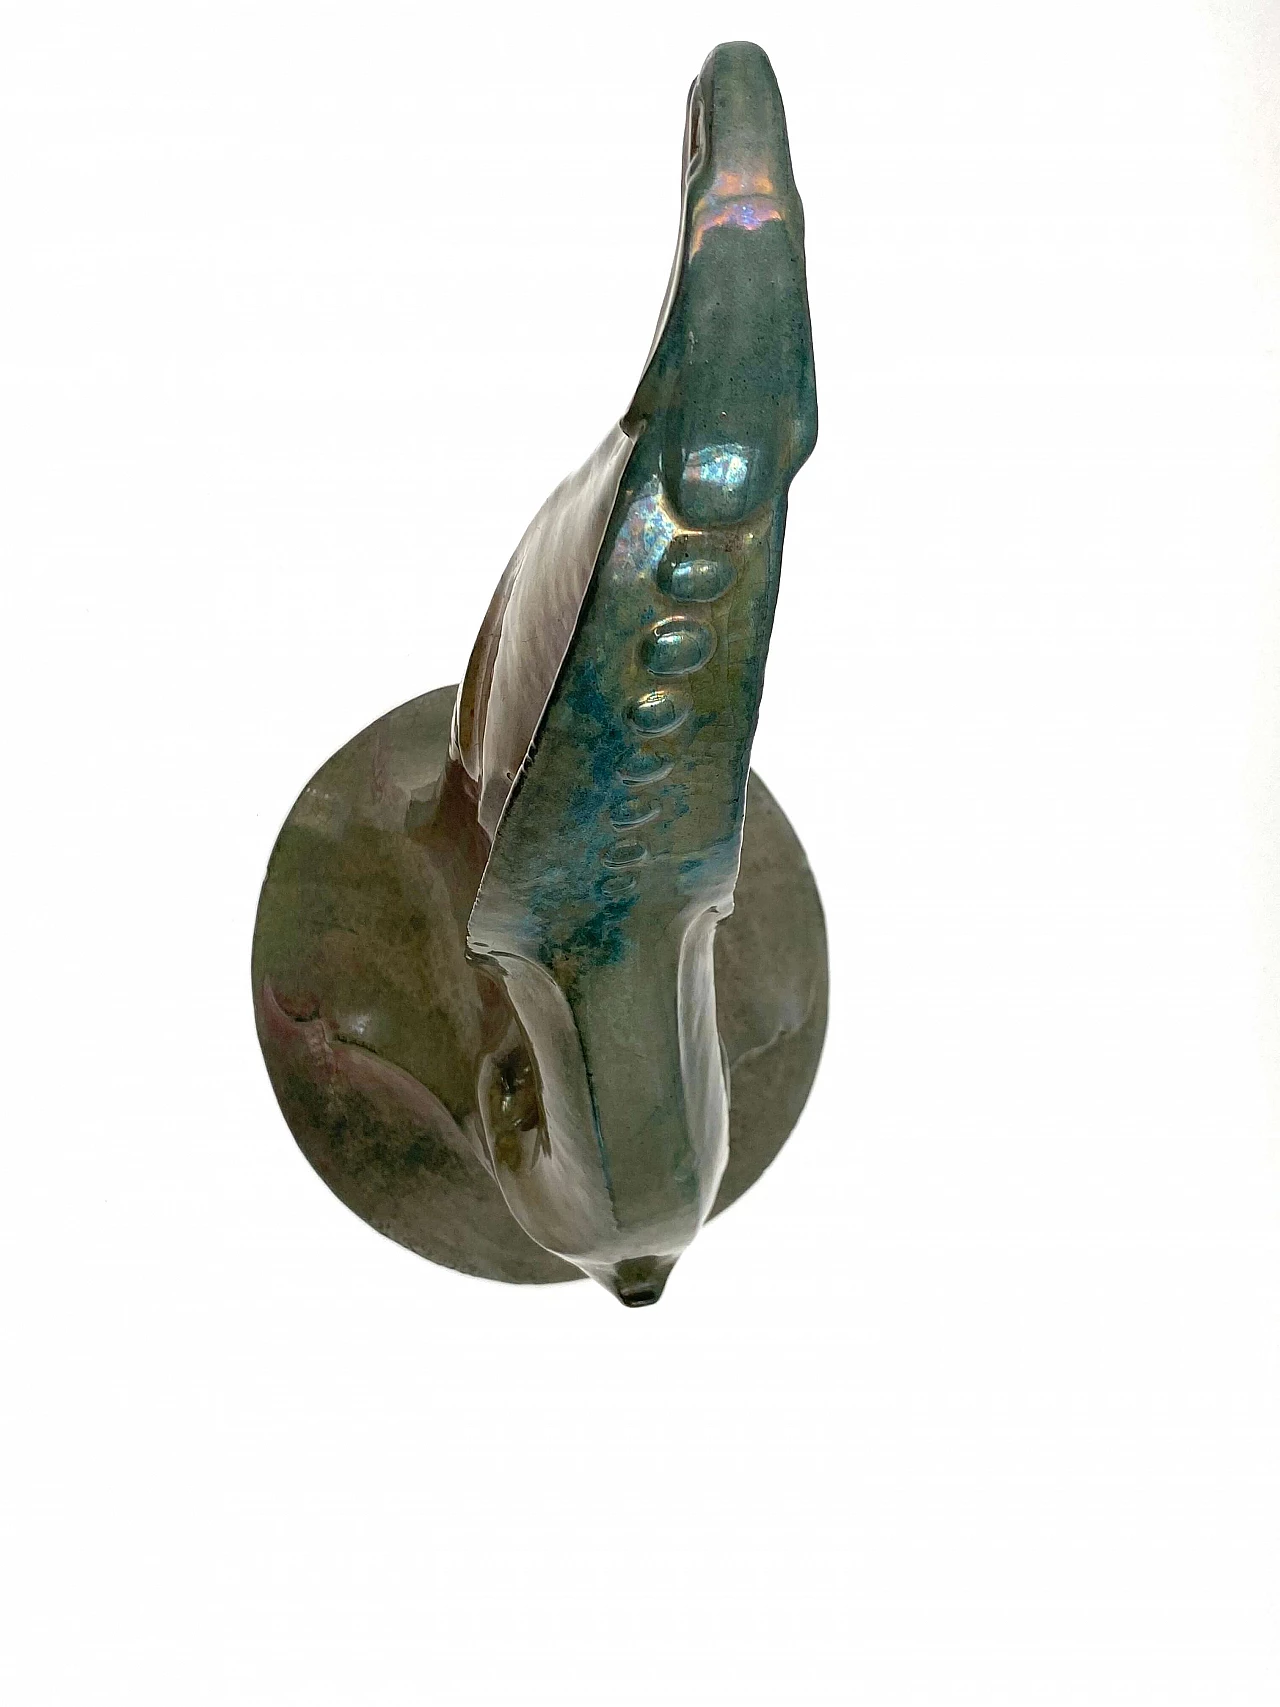 A. Chini, Créature Fantastique, craquelé ceramic sculpture, 1930s 1306785